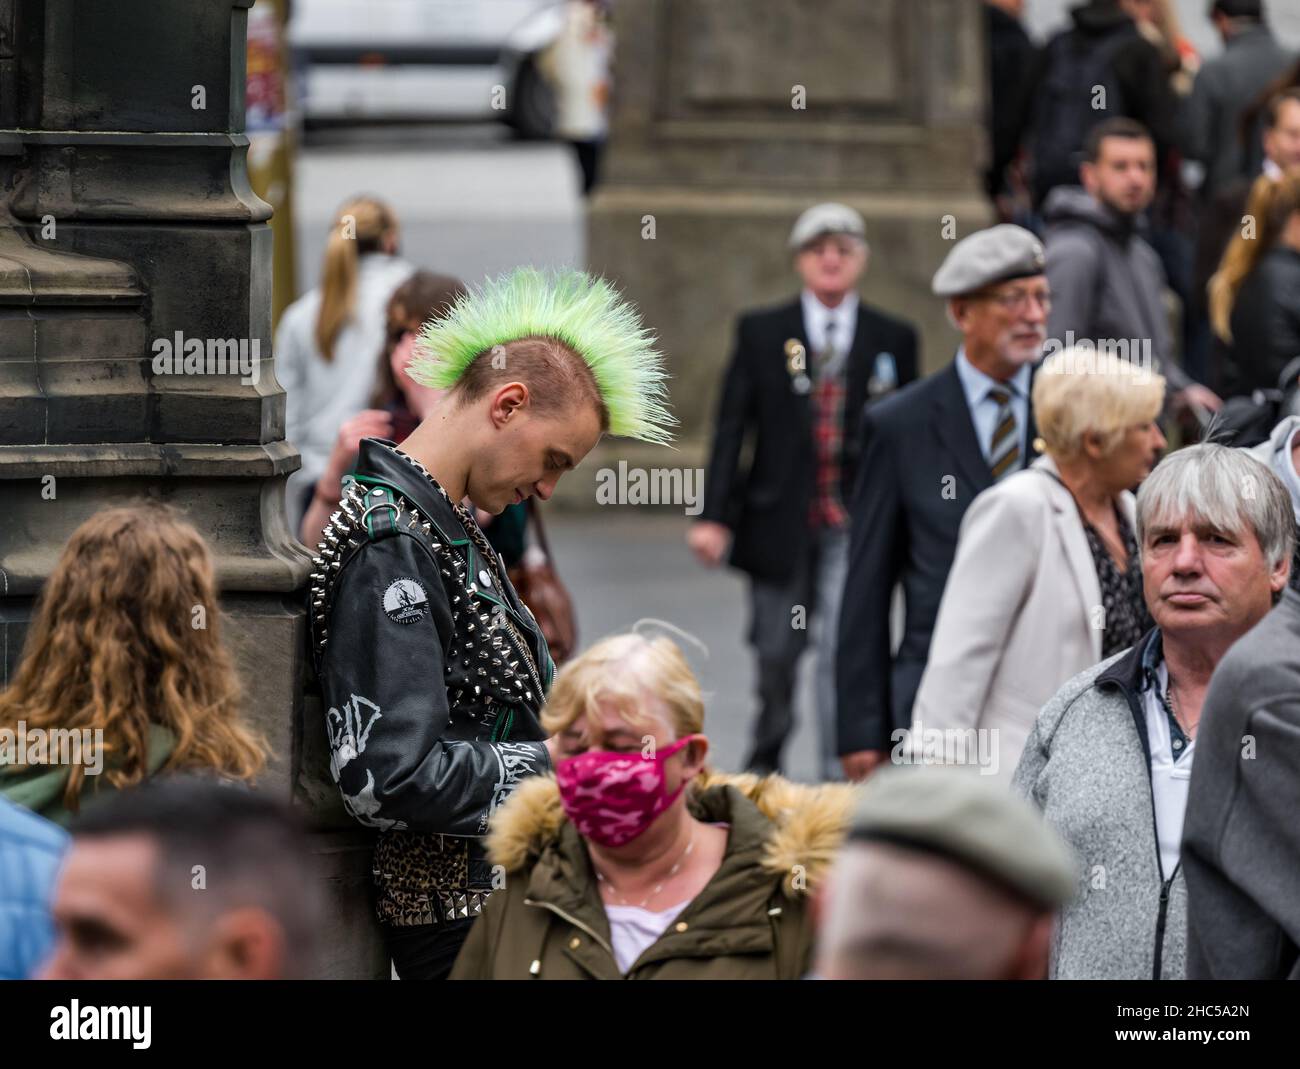 Ein junger Mann, der sein Telefon mit einer mohikanischen Punk-Frisur unter einer Menschenmenge anschaut, Royal Mile, Edinburgh, Schottland, Großbritannien Stockfoto